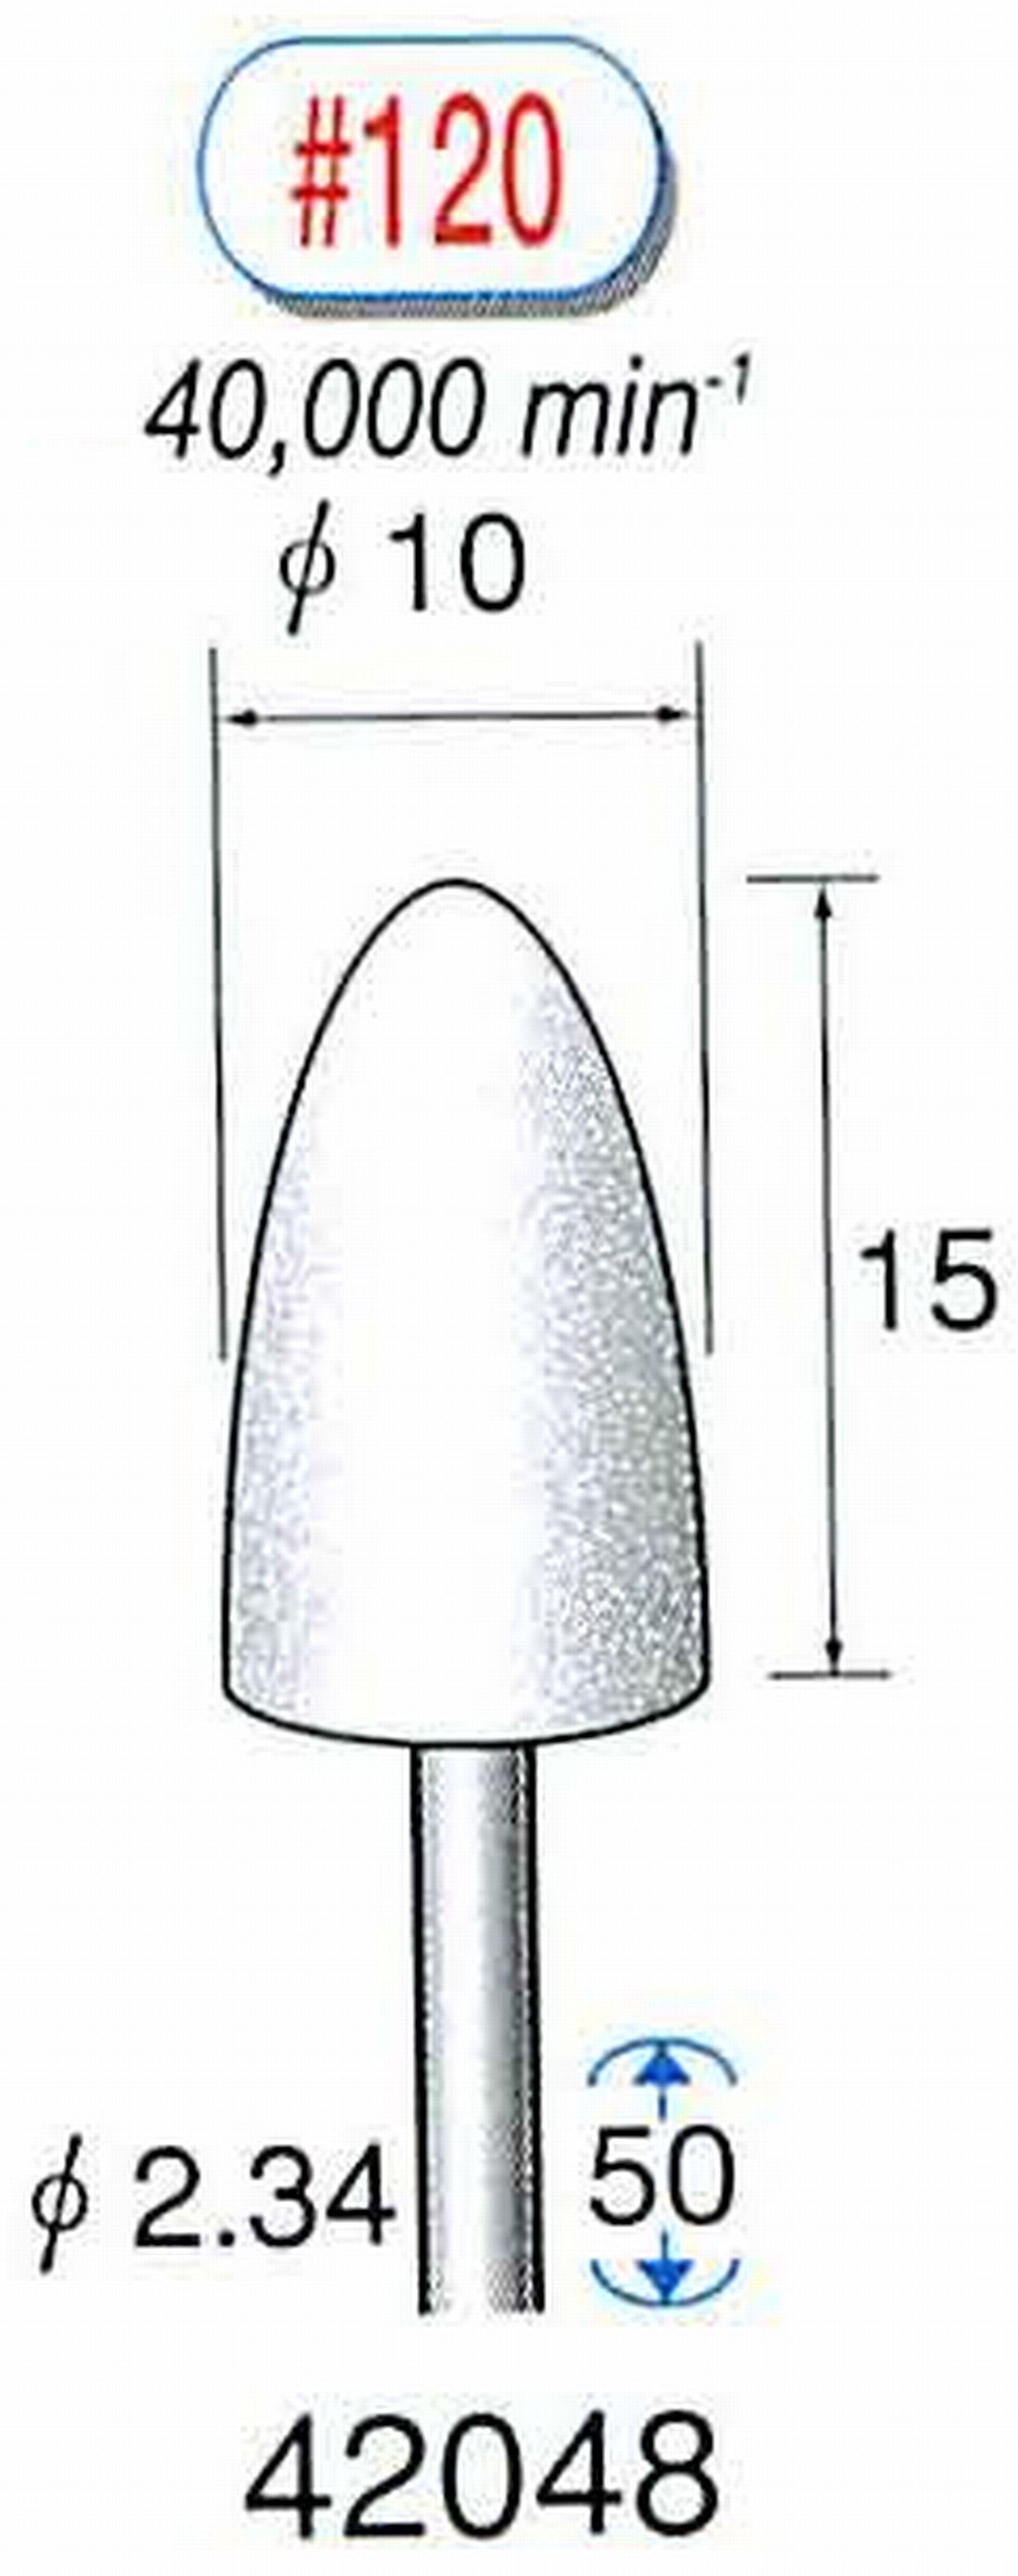 ナカニシ/NAKANISHI 軸付砥石(WA砥粒) 軸径(シャンク) φ2.34mm 42048